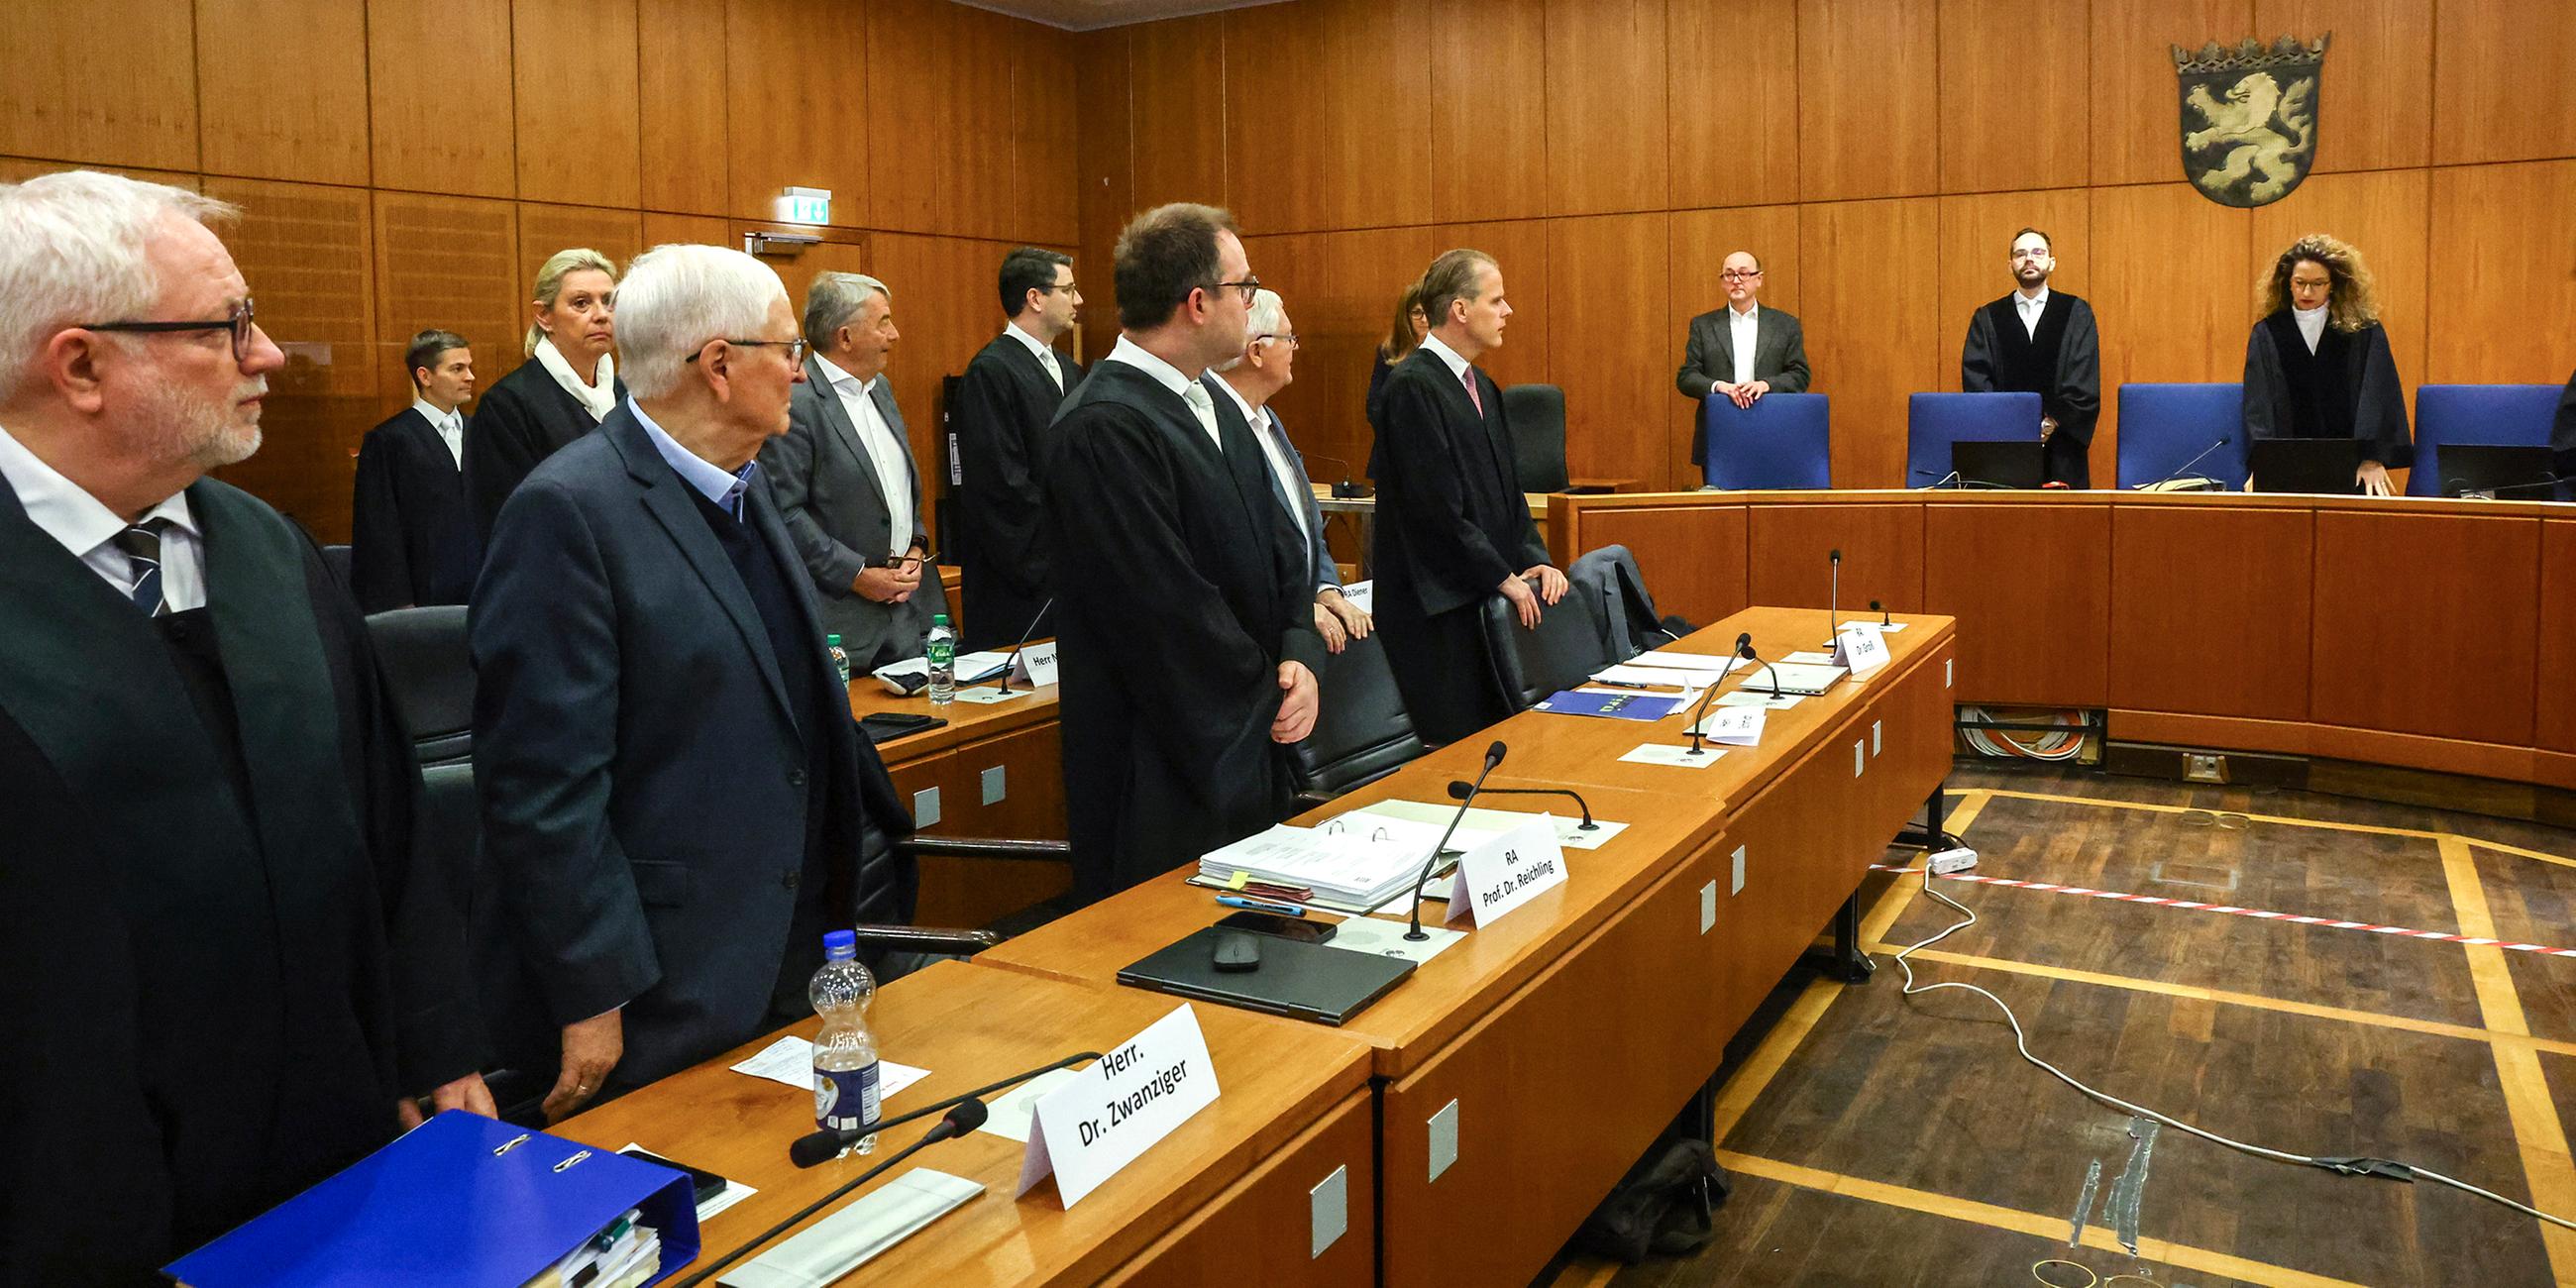 Erster Verhandlungstag im Gerichtssaal des Frankfurter Landgerichts